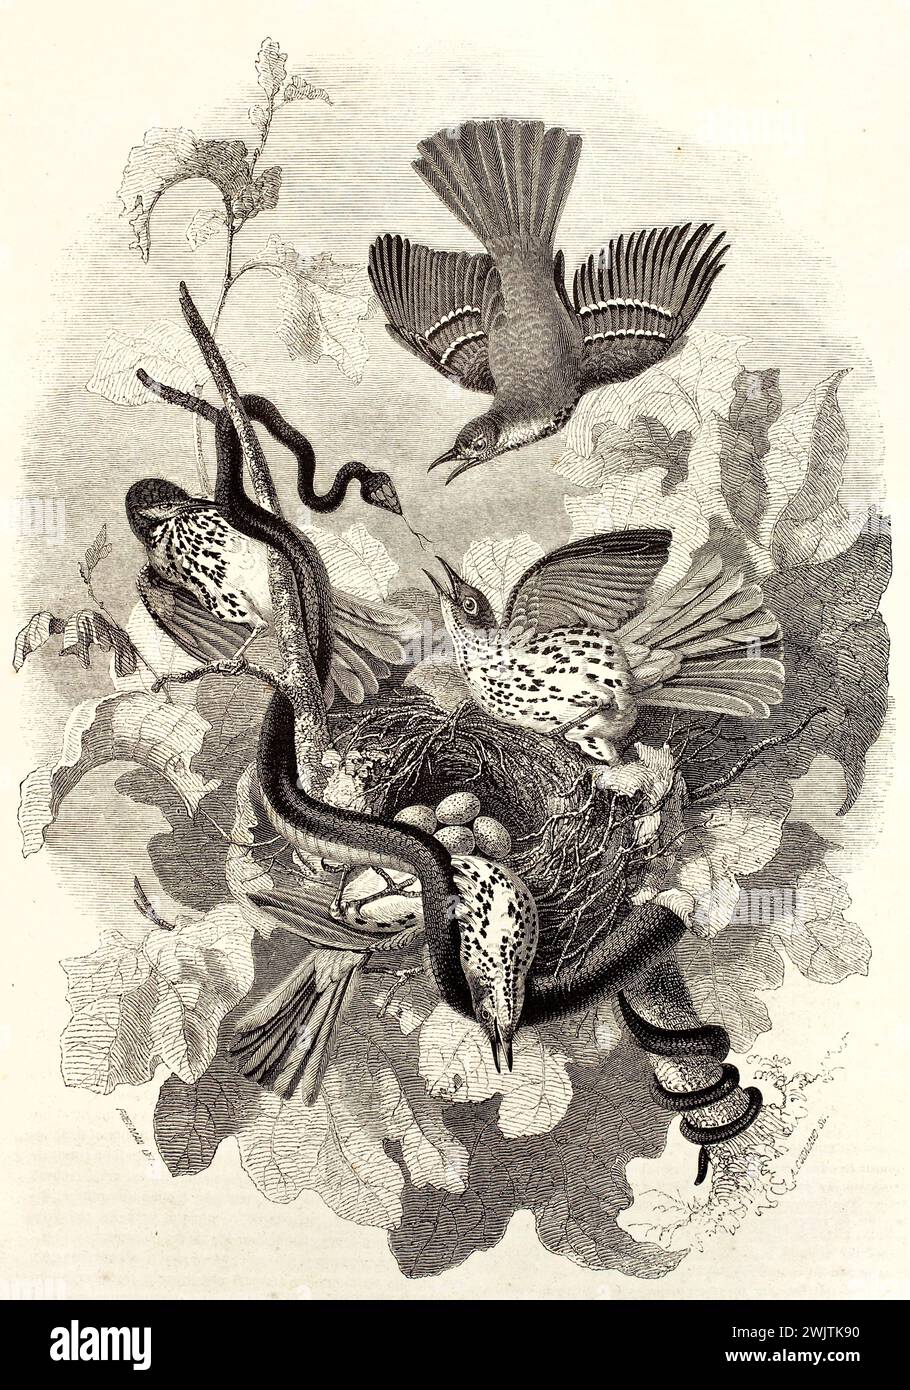 Illustration d'un ancien graveur représentant un serpent attaquant un nid de trasher brun. Créé par Freeman, publié sur magasin pittoresque, Paris, 1852 Banque D'Images